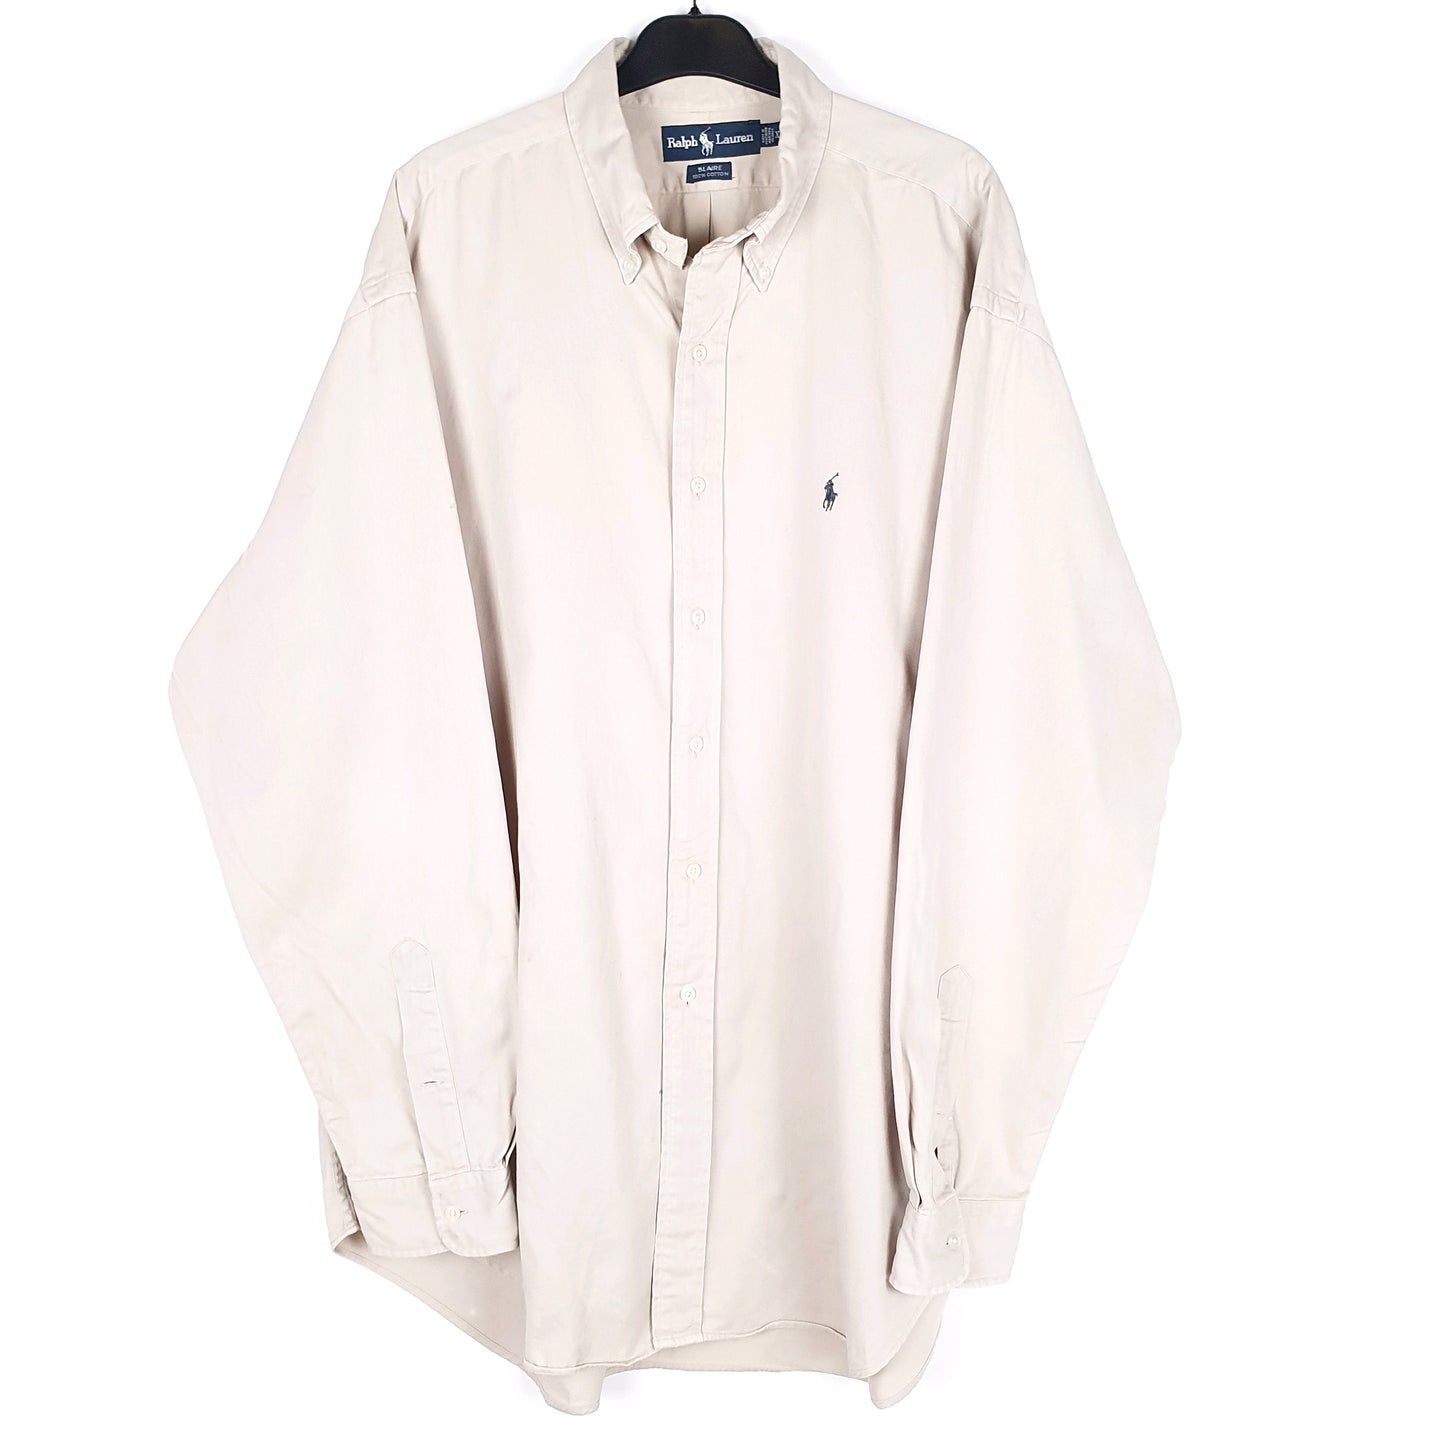 Beige Polo Ralph Lauren Long Sleeve Shirt